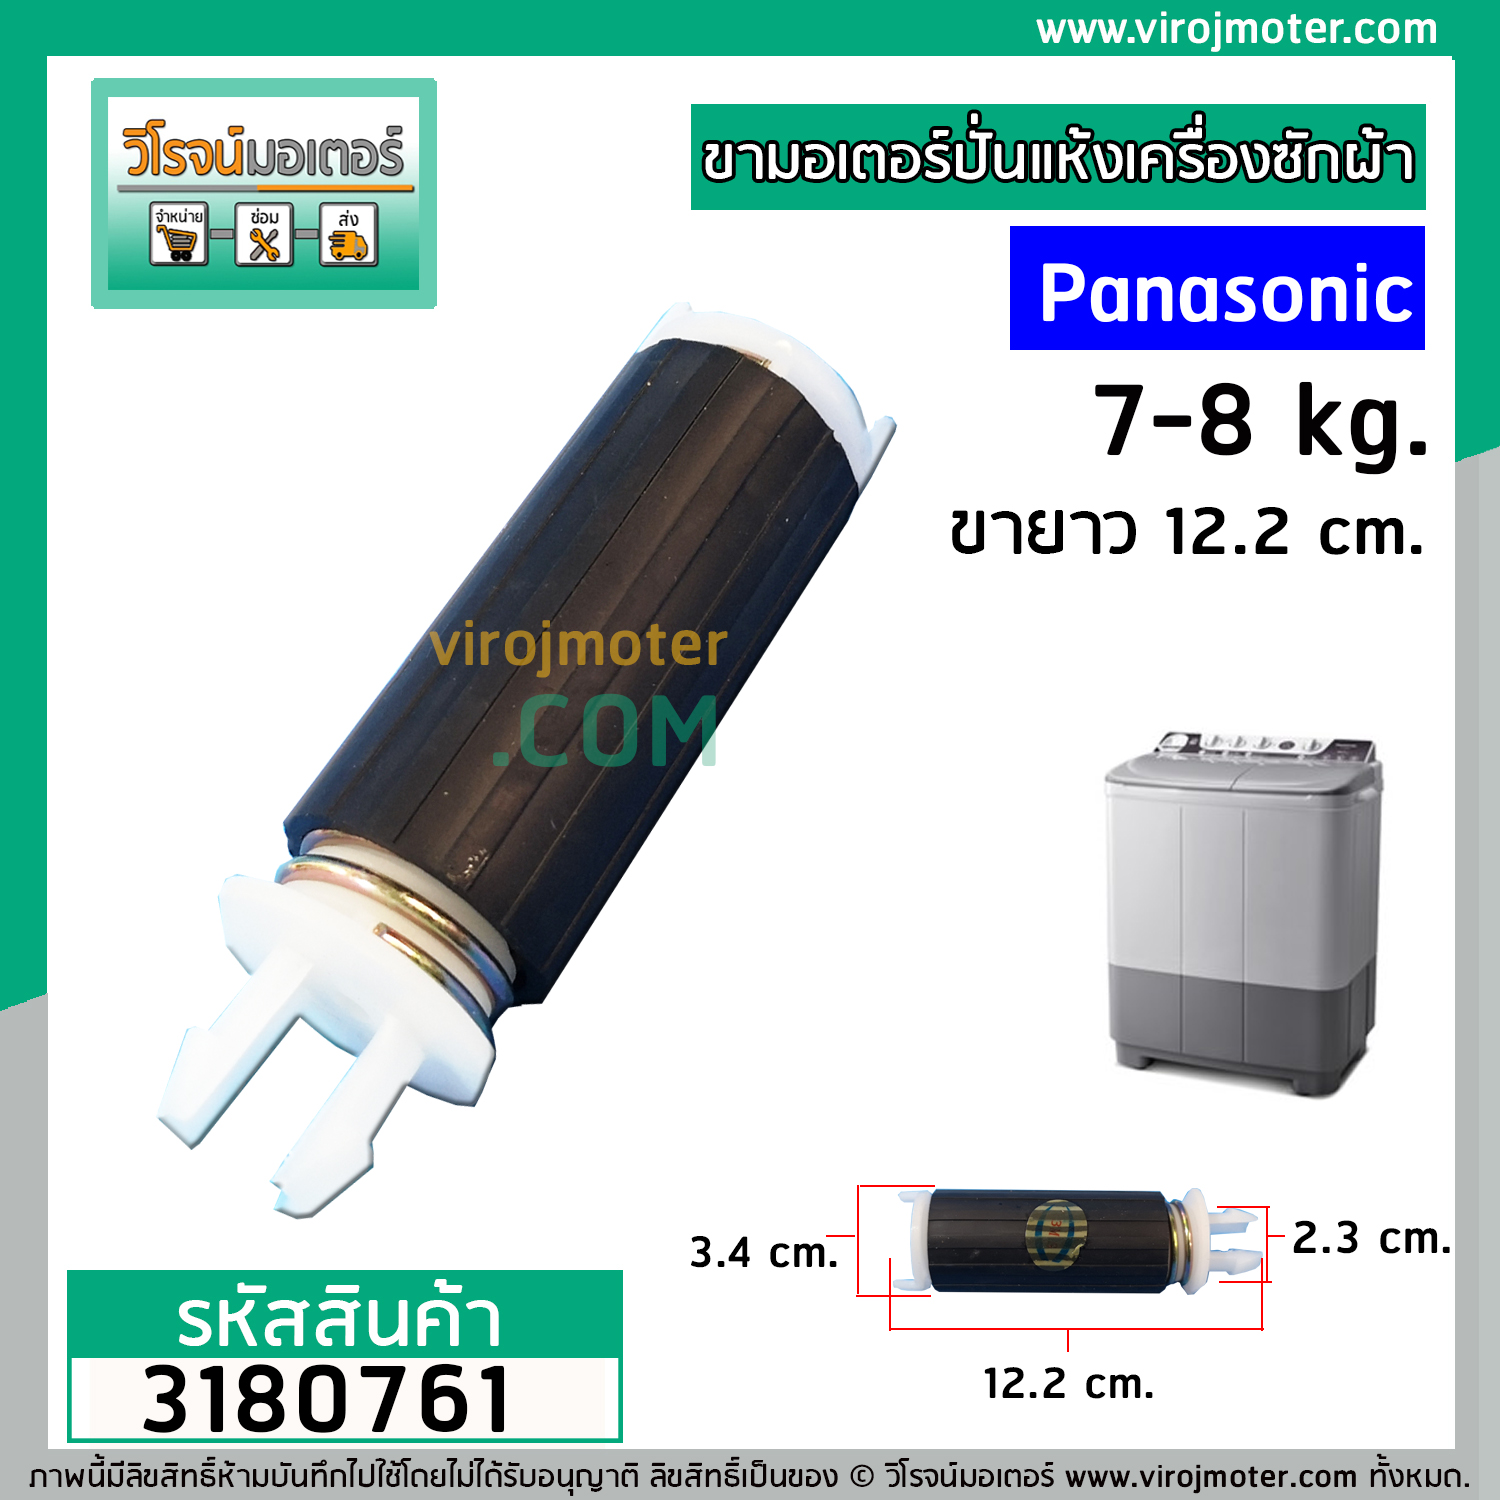 ขาสปริงมอเตอร์ปั่นแห้ง เครื่องซักผ้า Panasonic สำหรับ 9 - 14 Kg. ขายาว 12.2 cm. (ขายแยก 1 ชิ้น) (No.3180761)